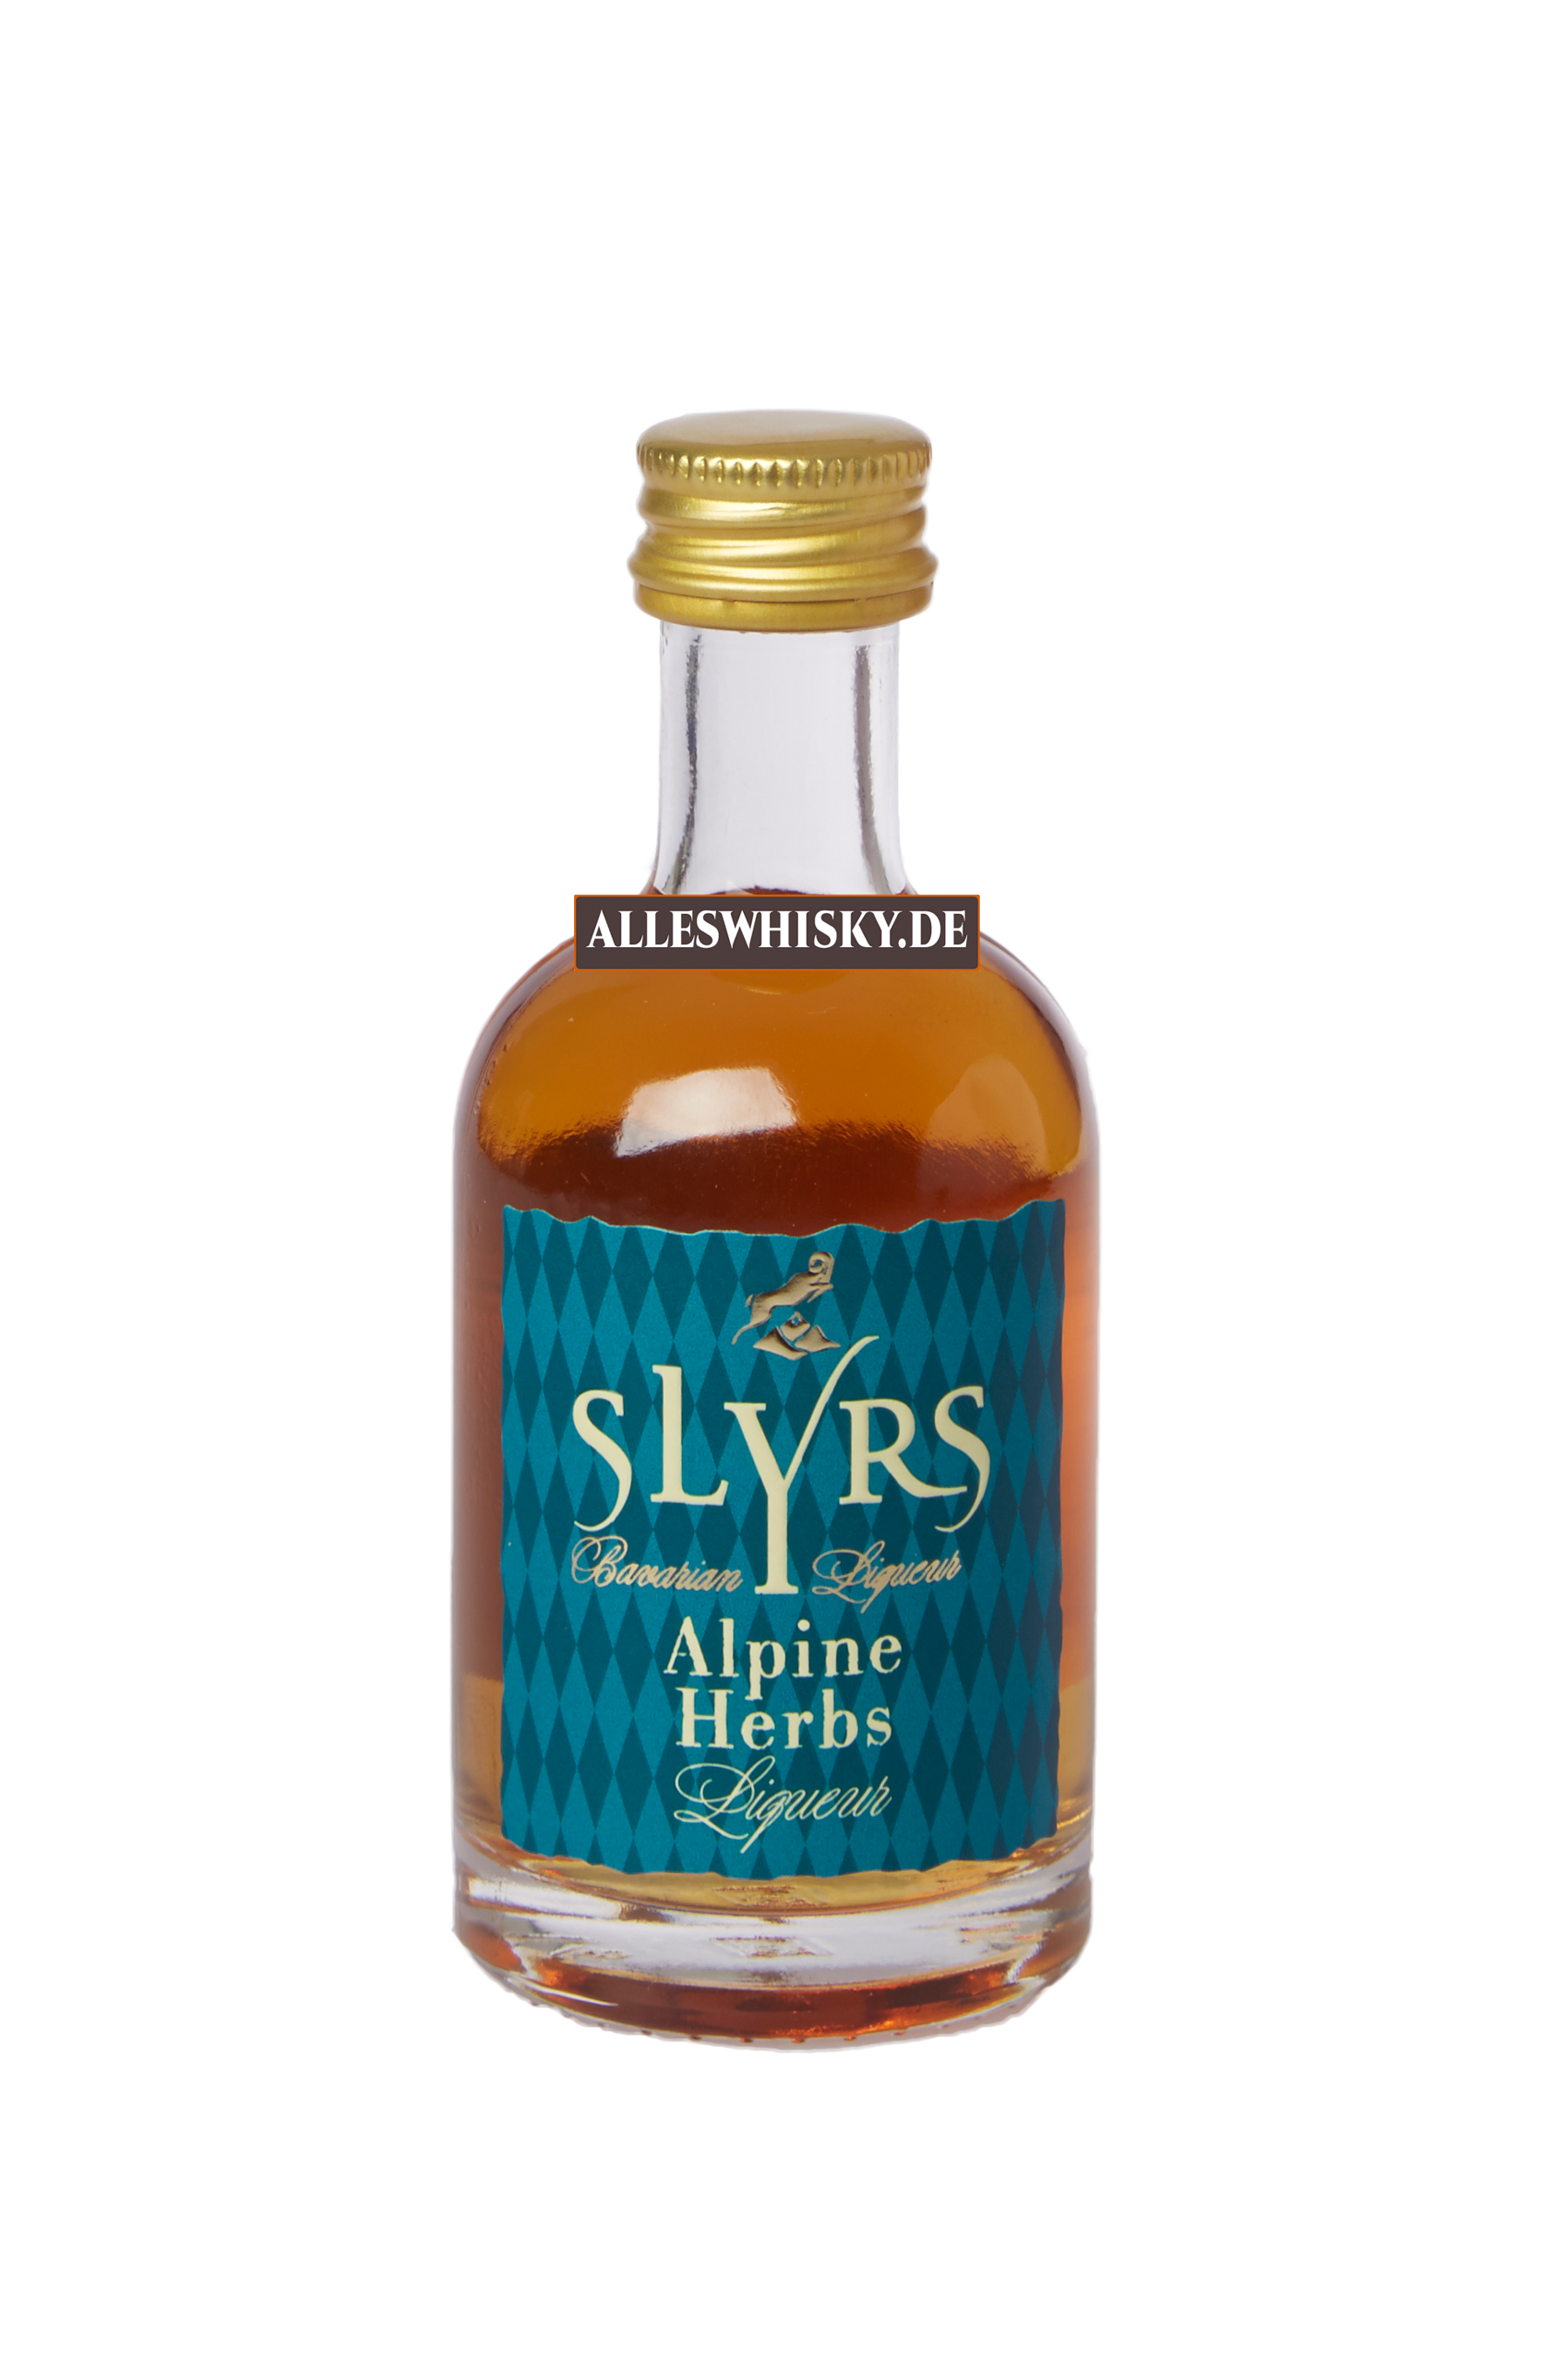 slyrs-alpine-herbs-whisky-liqueur-30-prozent-miniatur